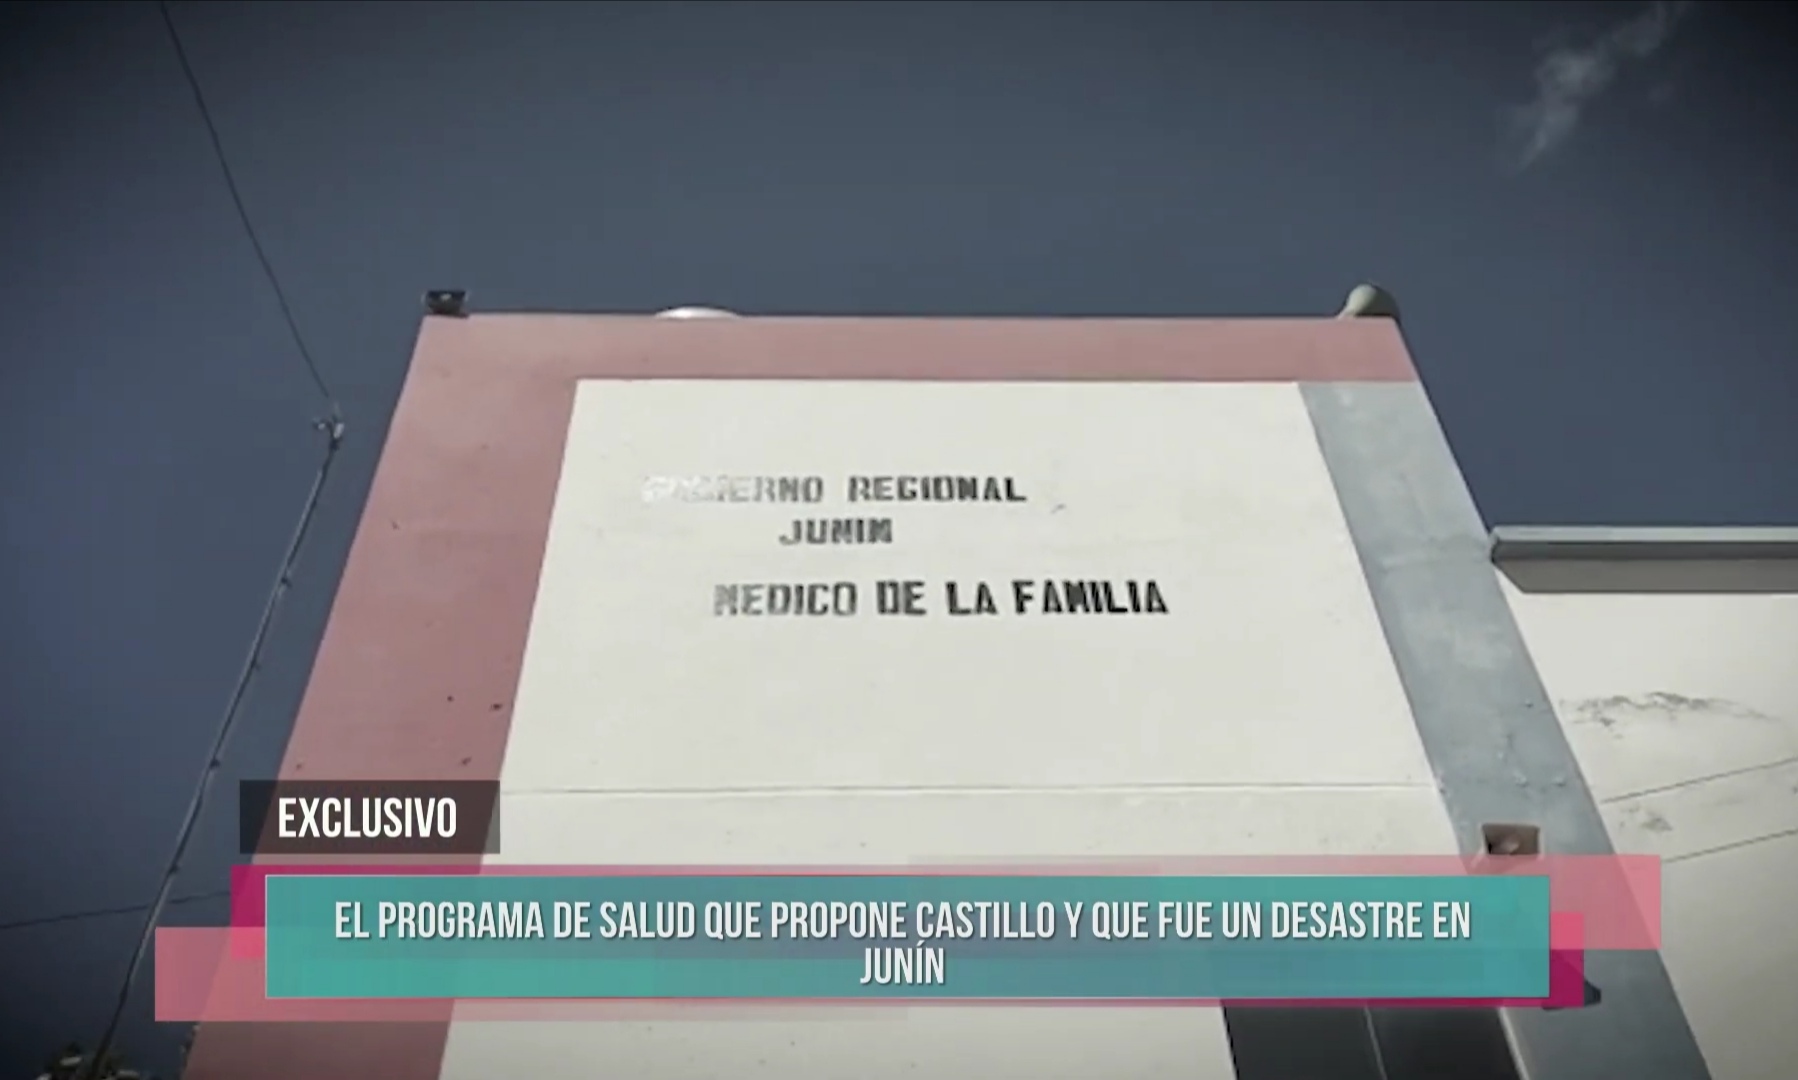 Milagros Leiva Entrevista: El programa de salud que propone Castillo y fue un desastre en Junín